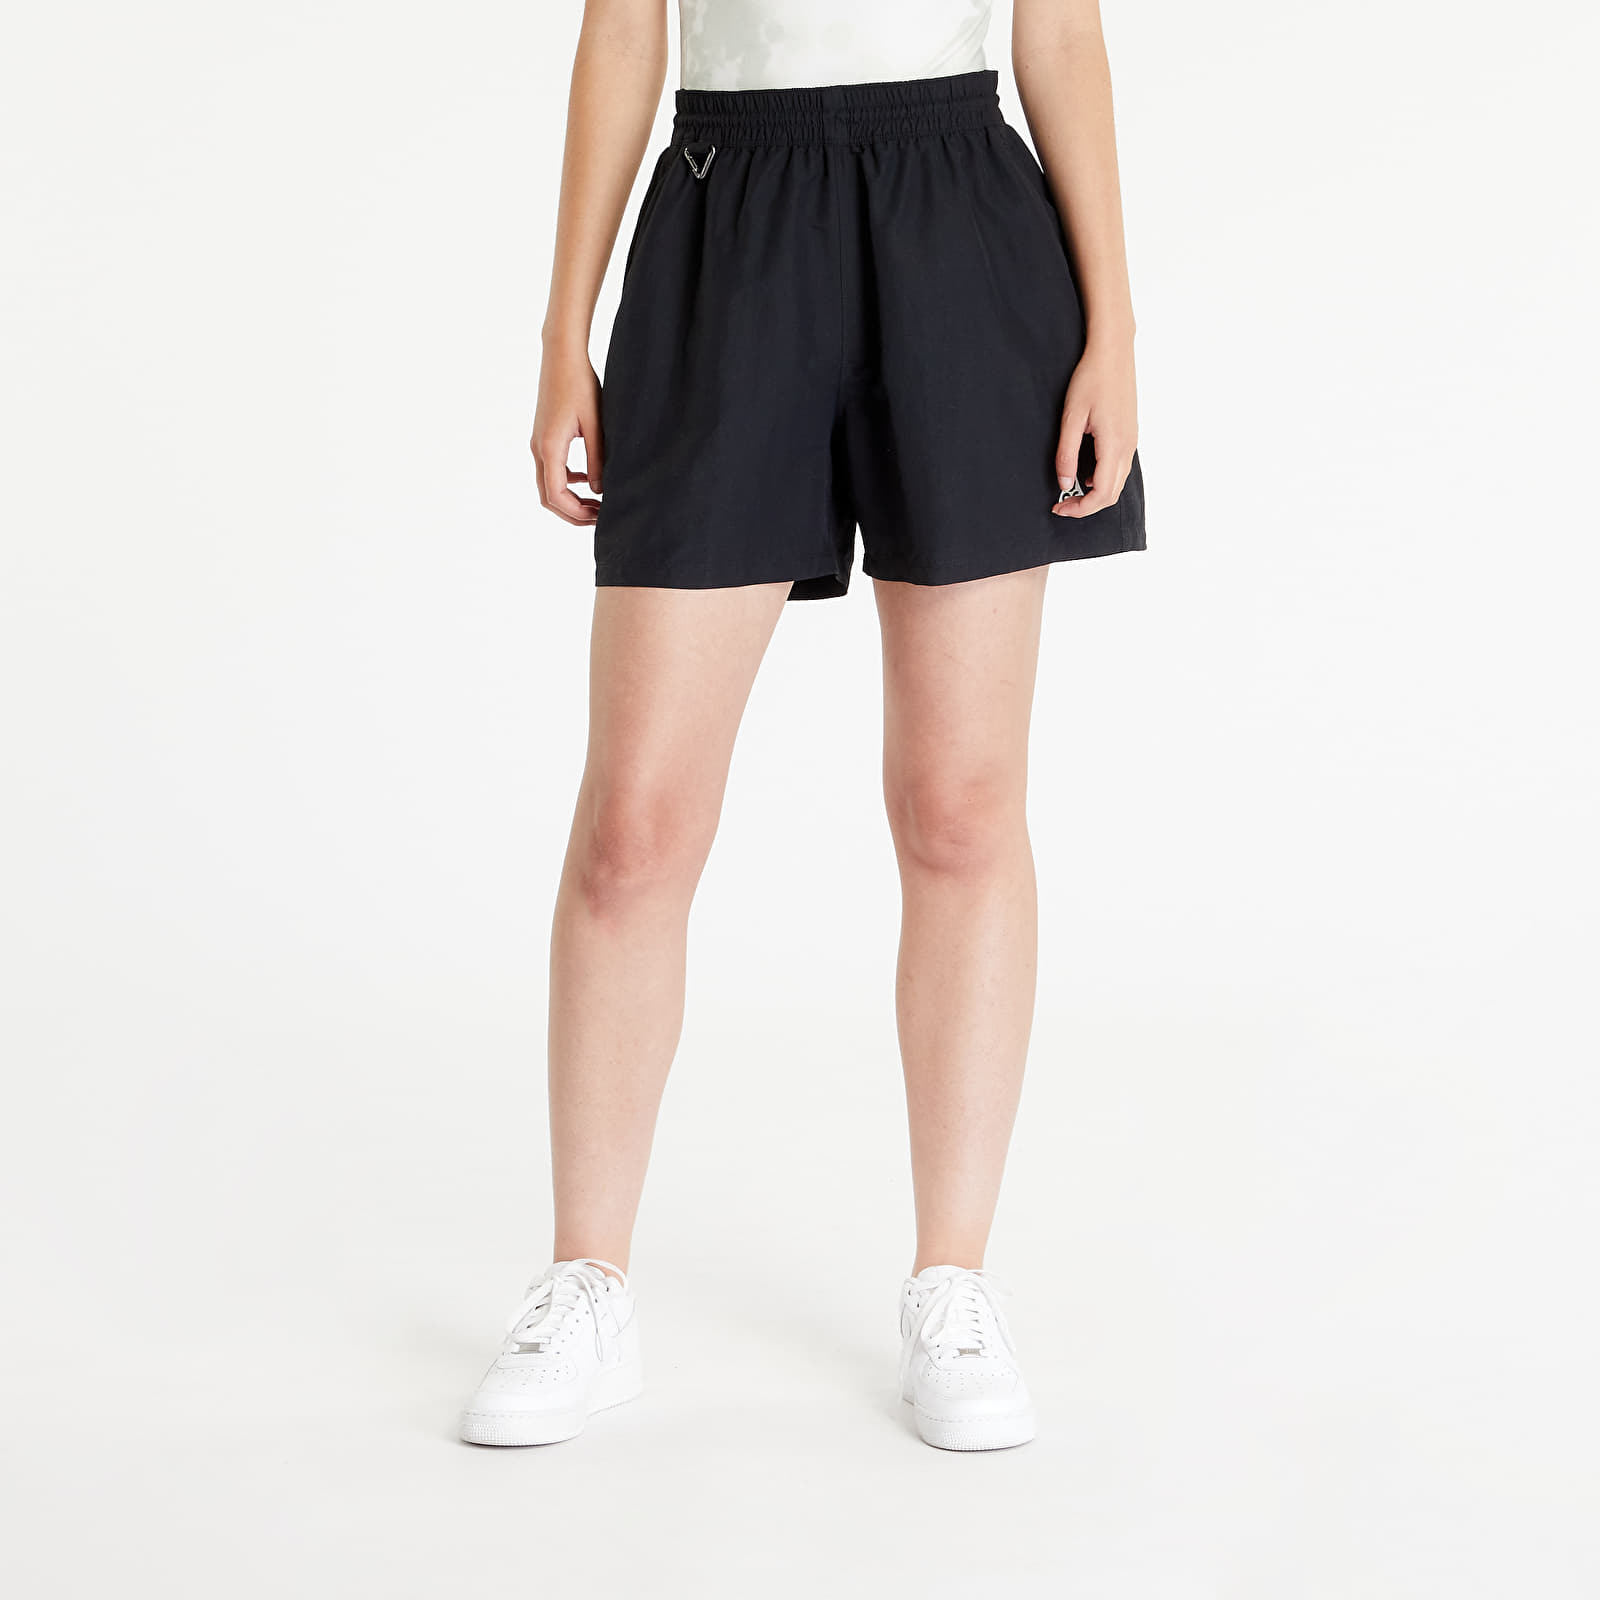 Nike - acg women's oversized shorts black/ summit white